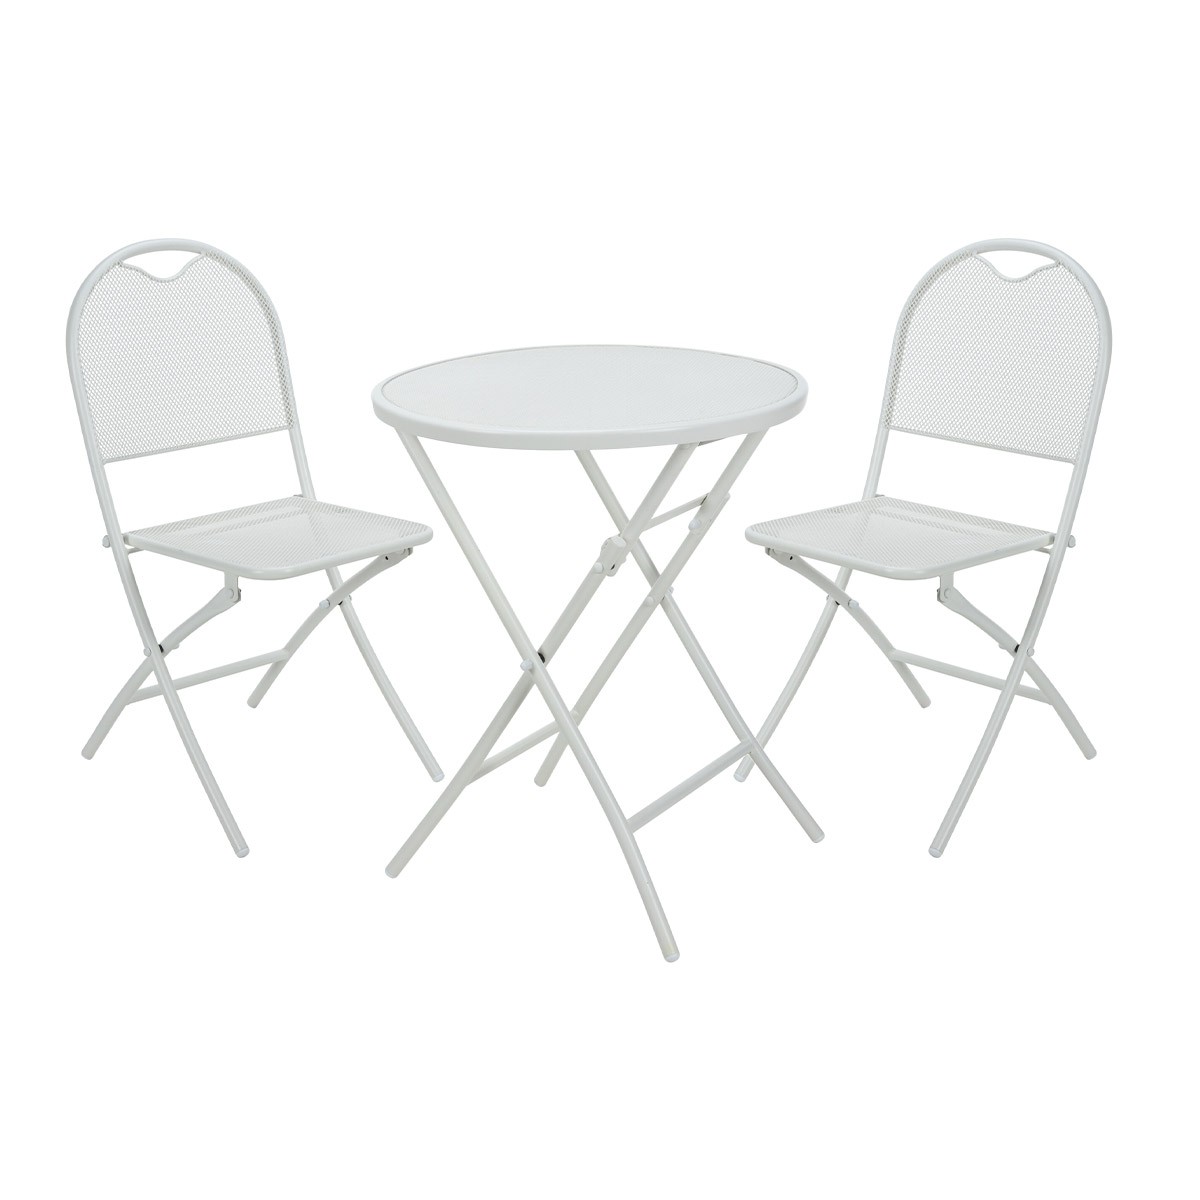 Ensemble table de jardin ronde blanc cassé + 2 chaises